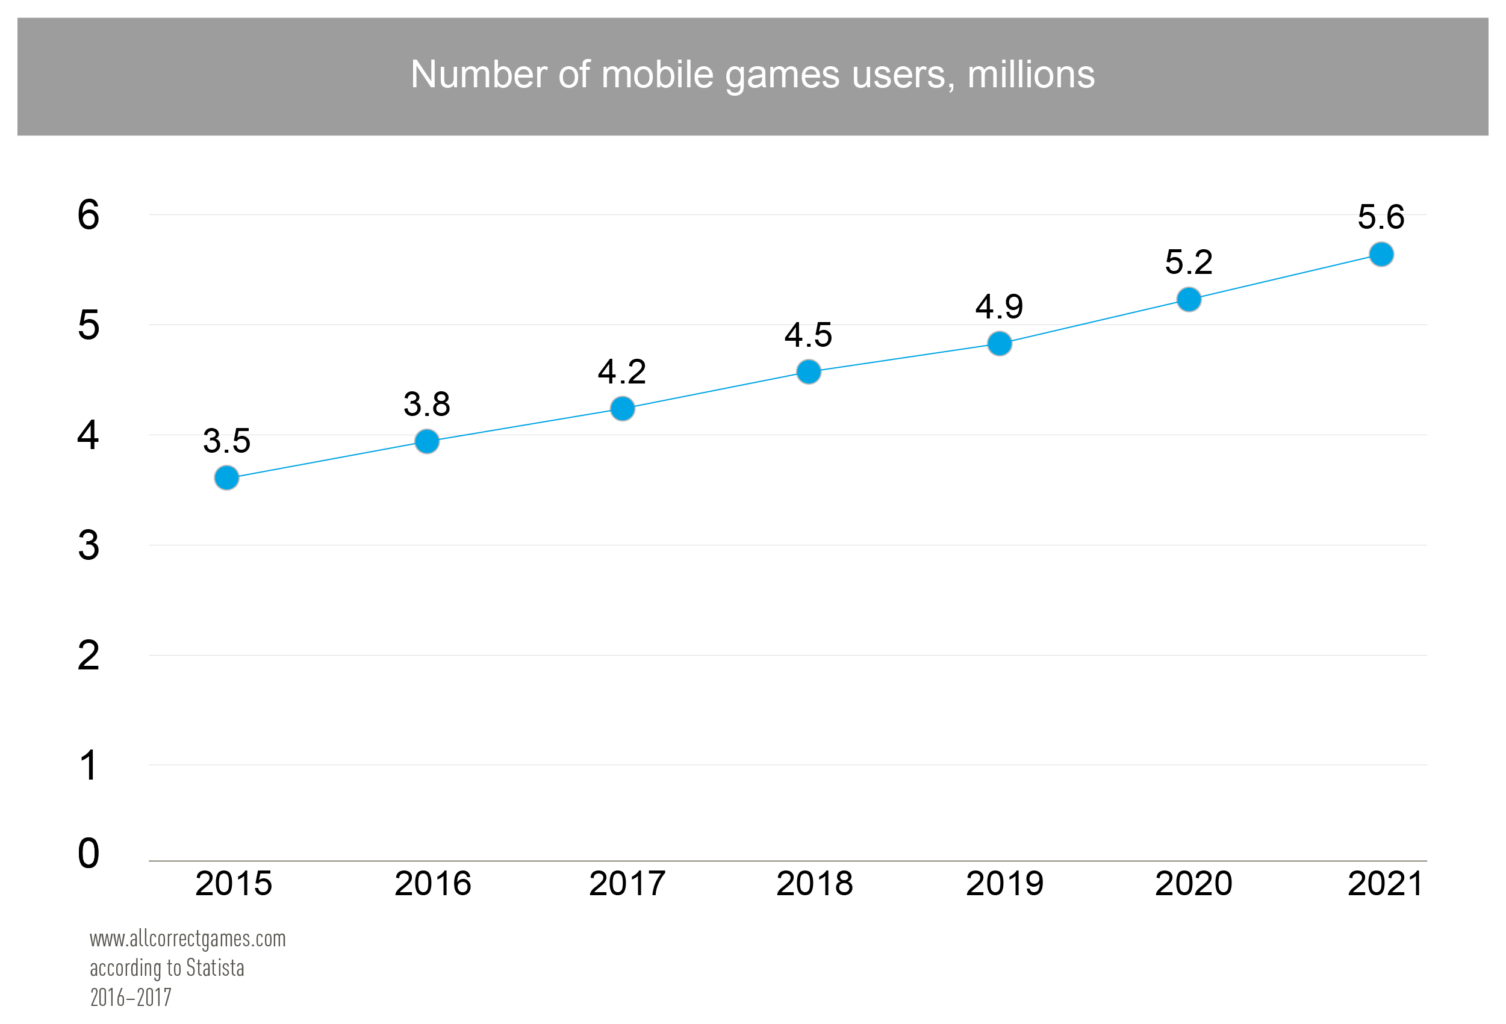 Netherlands Mobile Game Market